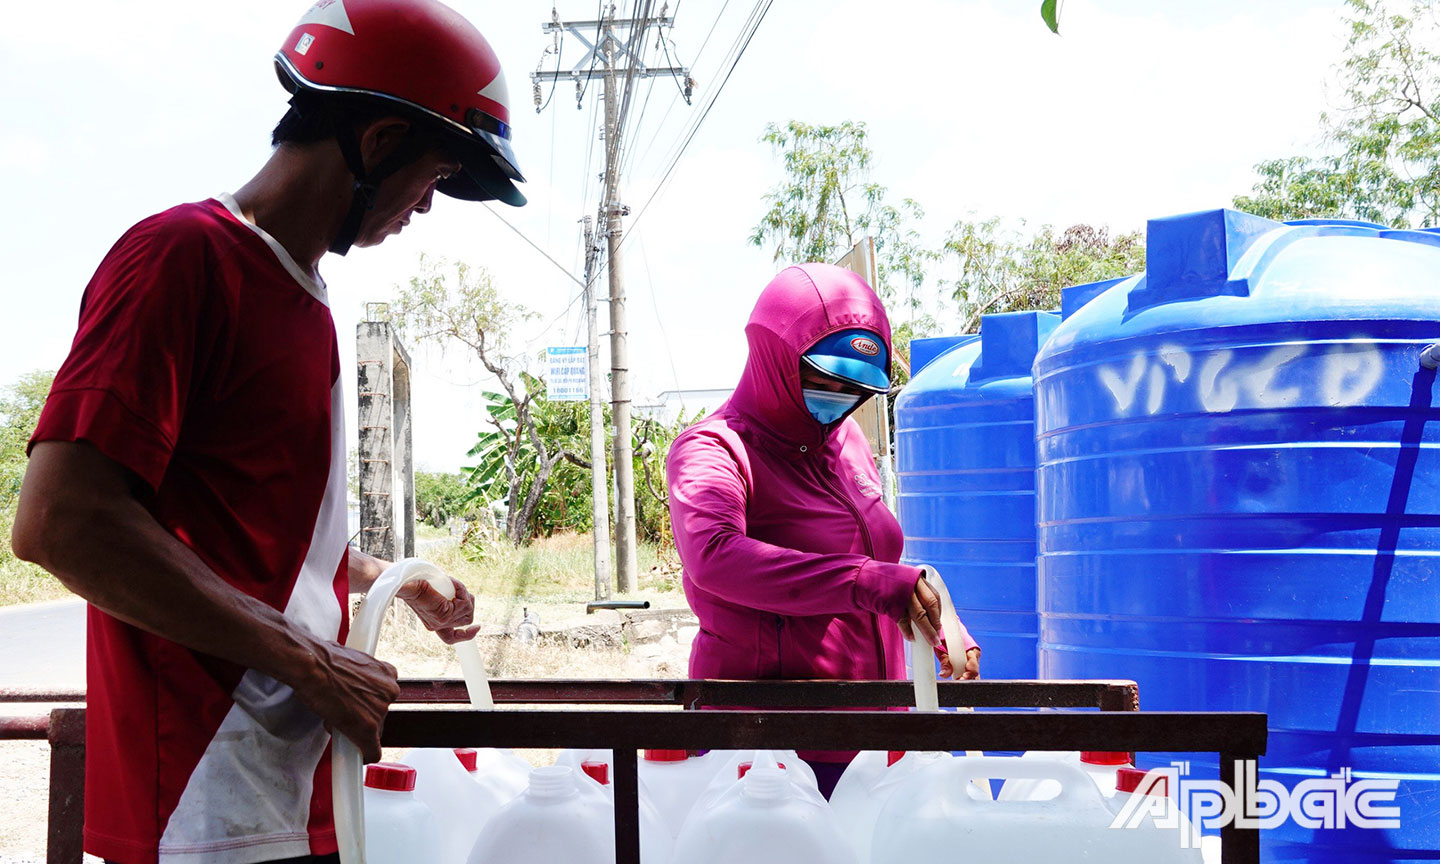 Người dân ở huyện Gò Công Đông đến lấy nước sinh hoạt tại các vòi nước công cộng và bồn chứa, nguồn nước miễn phí này đã giảm bớt khó khăn về nước sinh hoạt cho người dân.